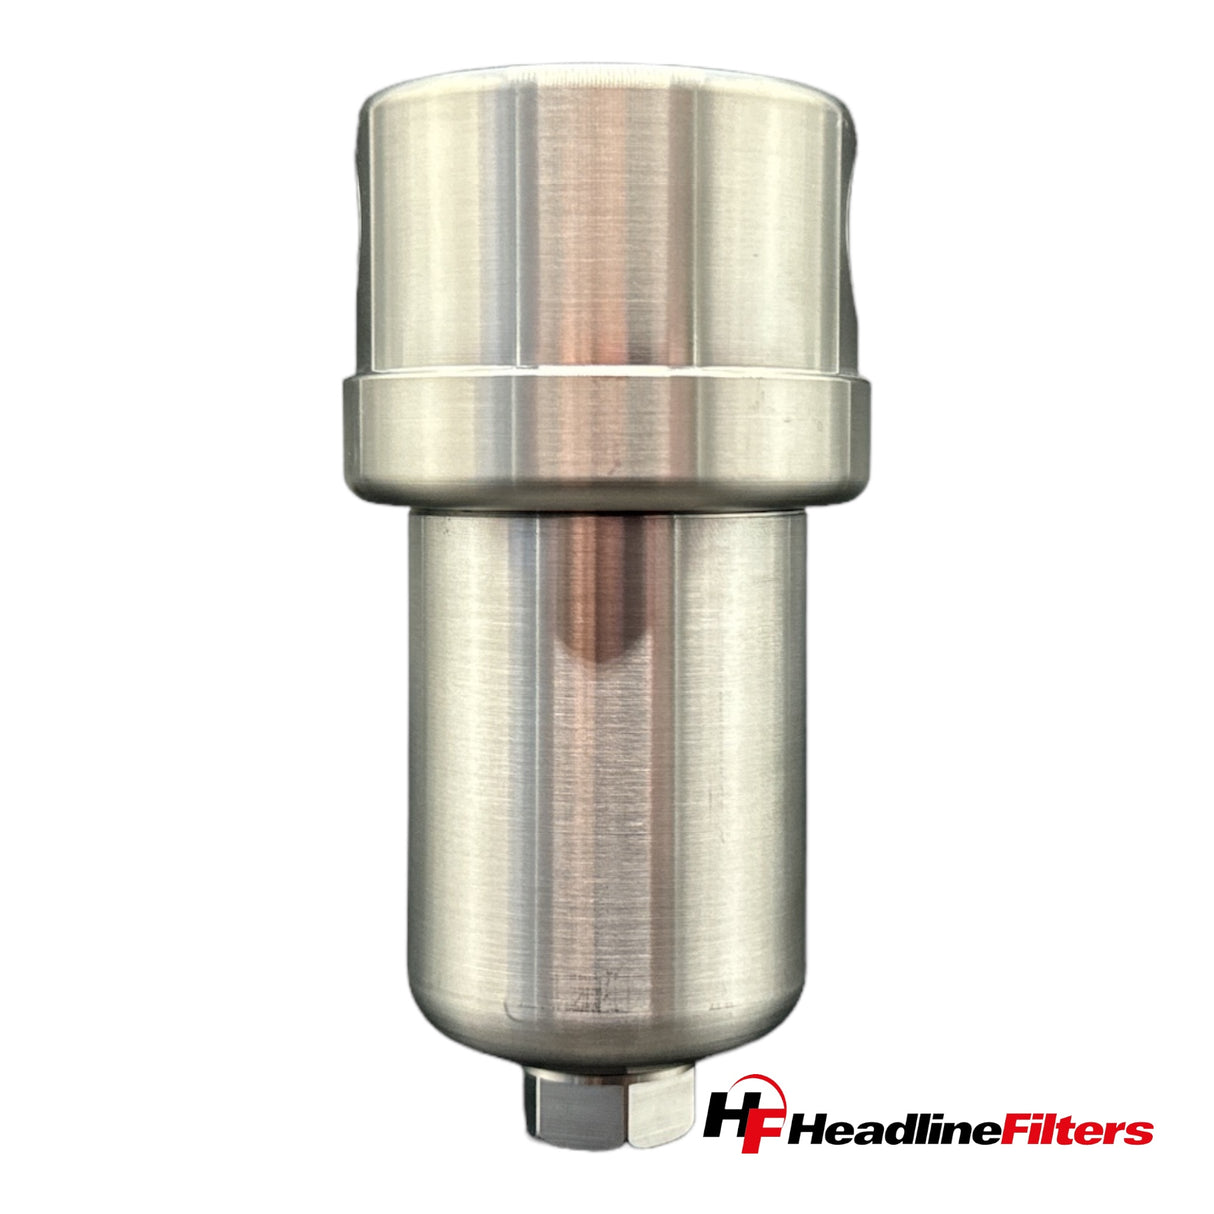 Filtergehäuse aus Edelstahl – Modell 130